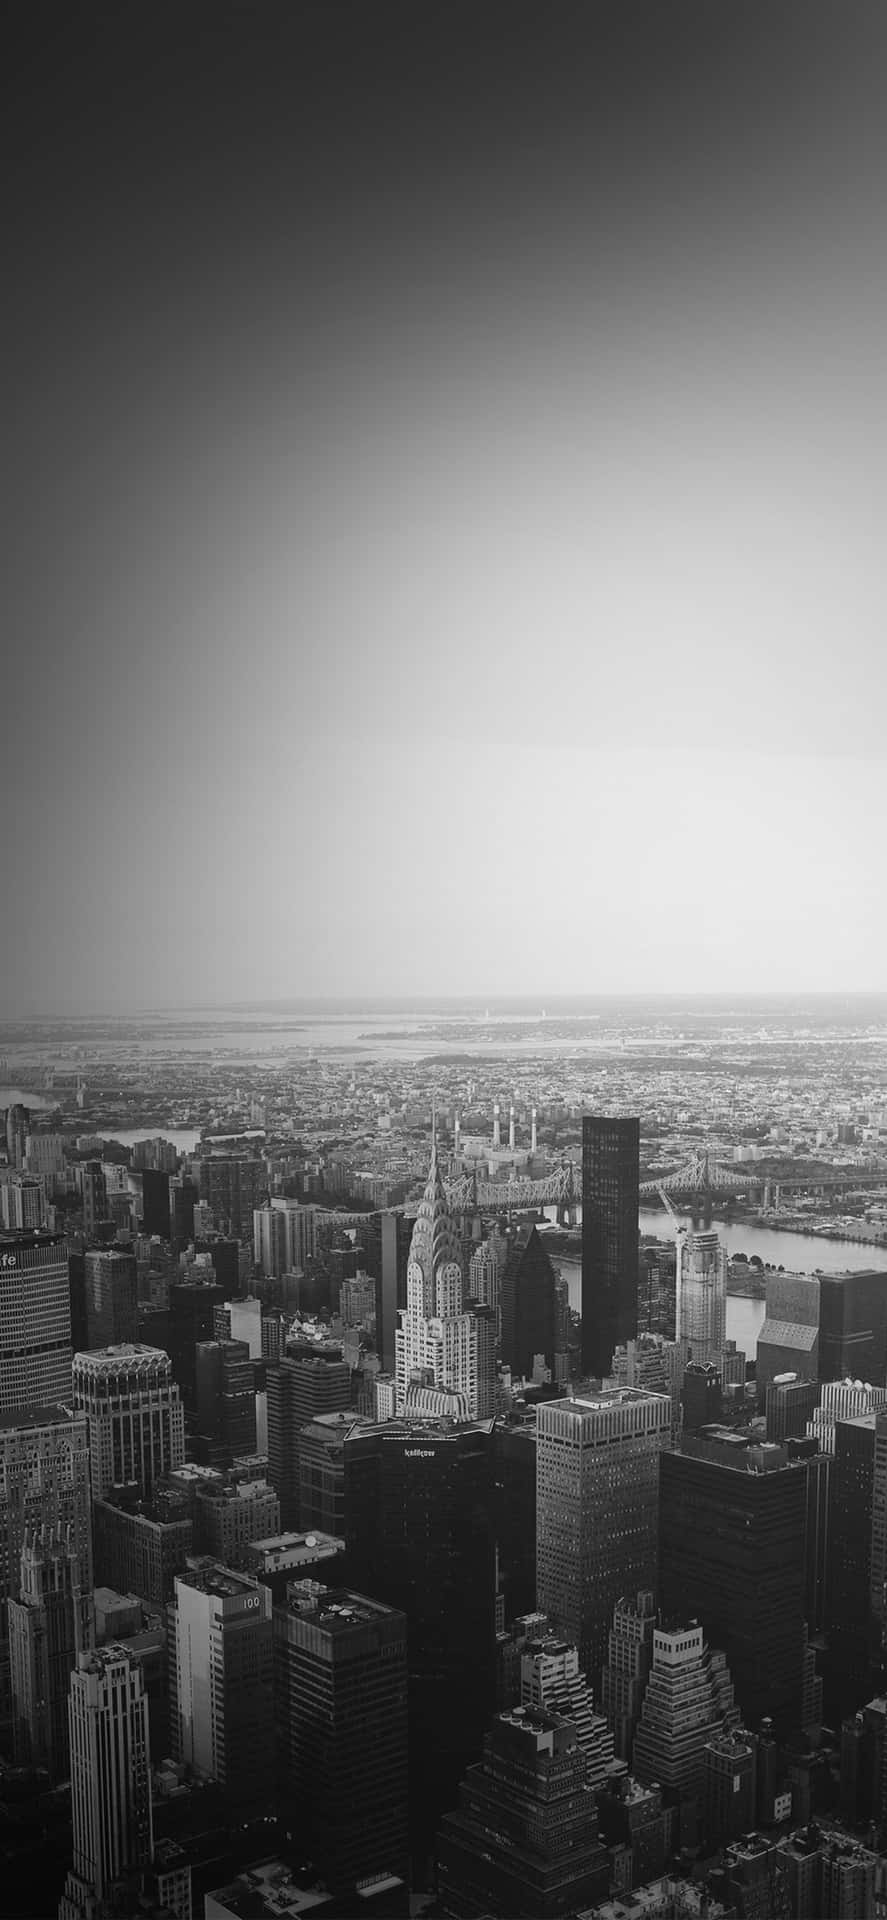 Capturala Vitalidad De La Ciudad Con La Foto Perfecta Del Atardecer De La Ciudad De Nueva York.